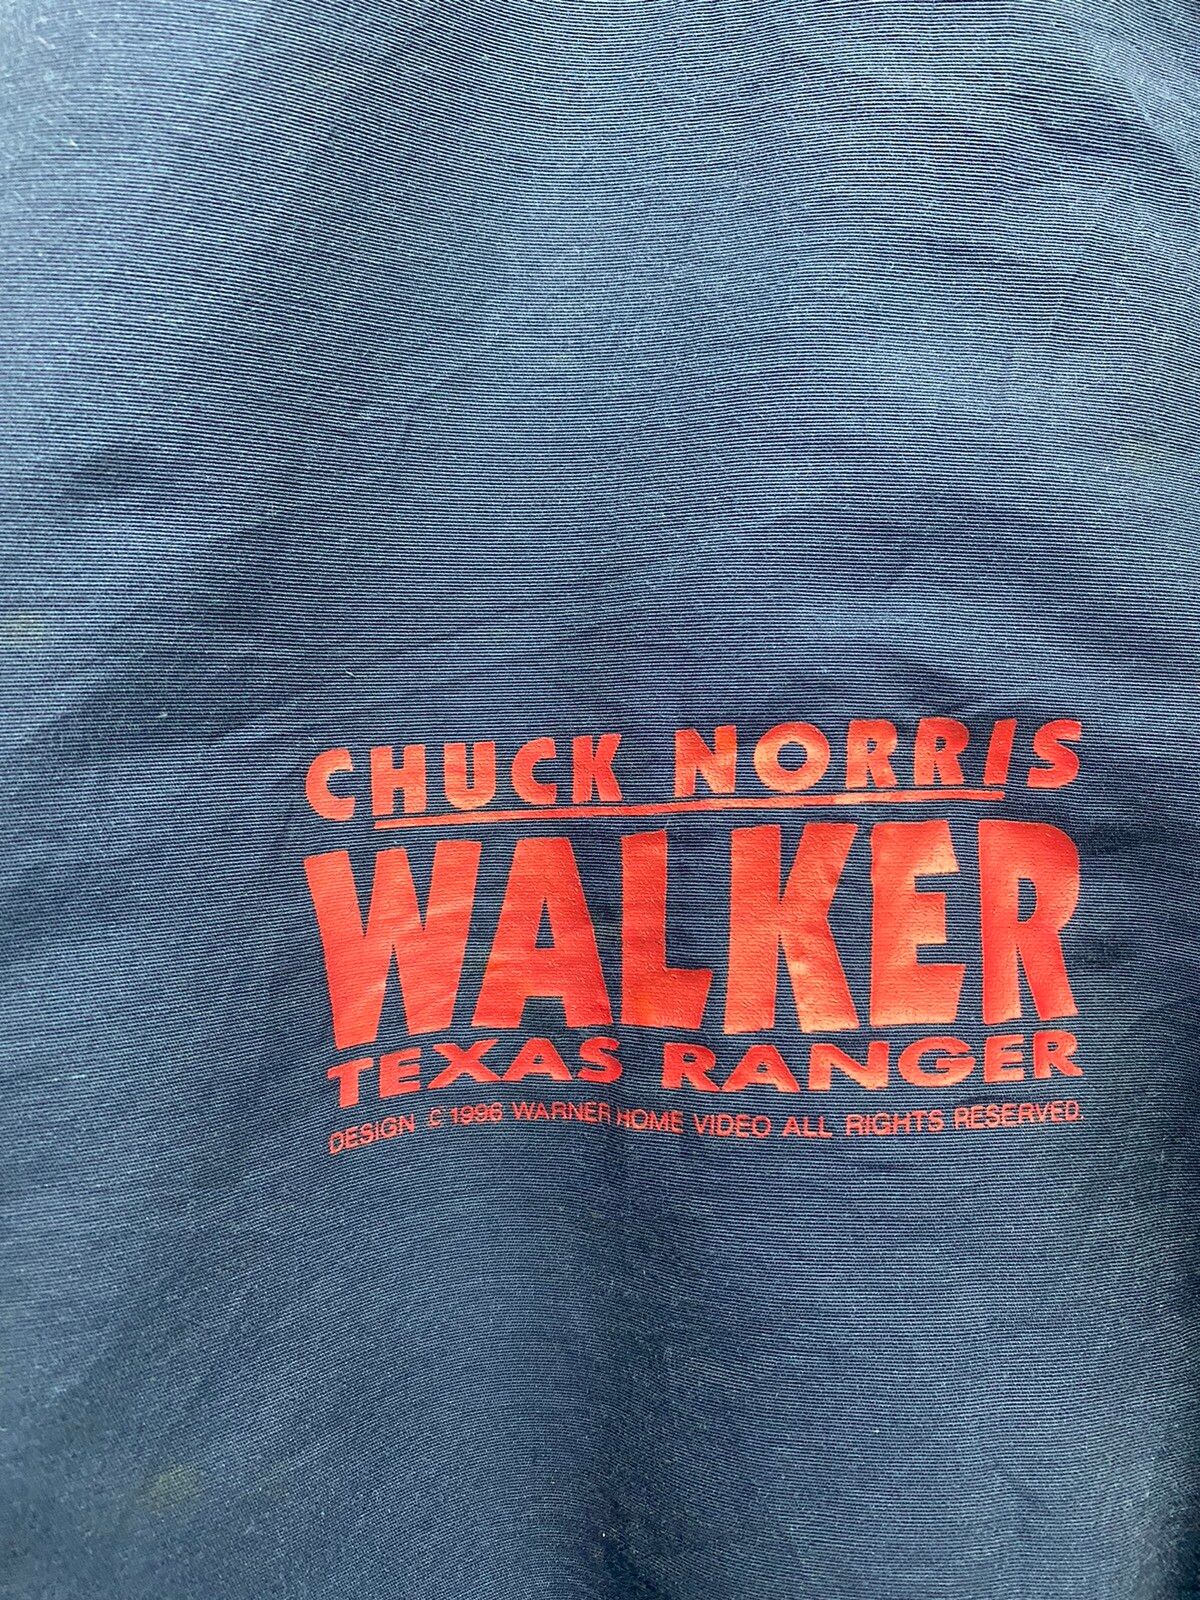 VINTAGE 1996 CHUCK NORRIS WALKER TEXAS RANGER MOVIE JACKET - 10